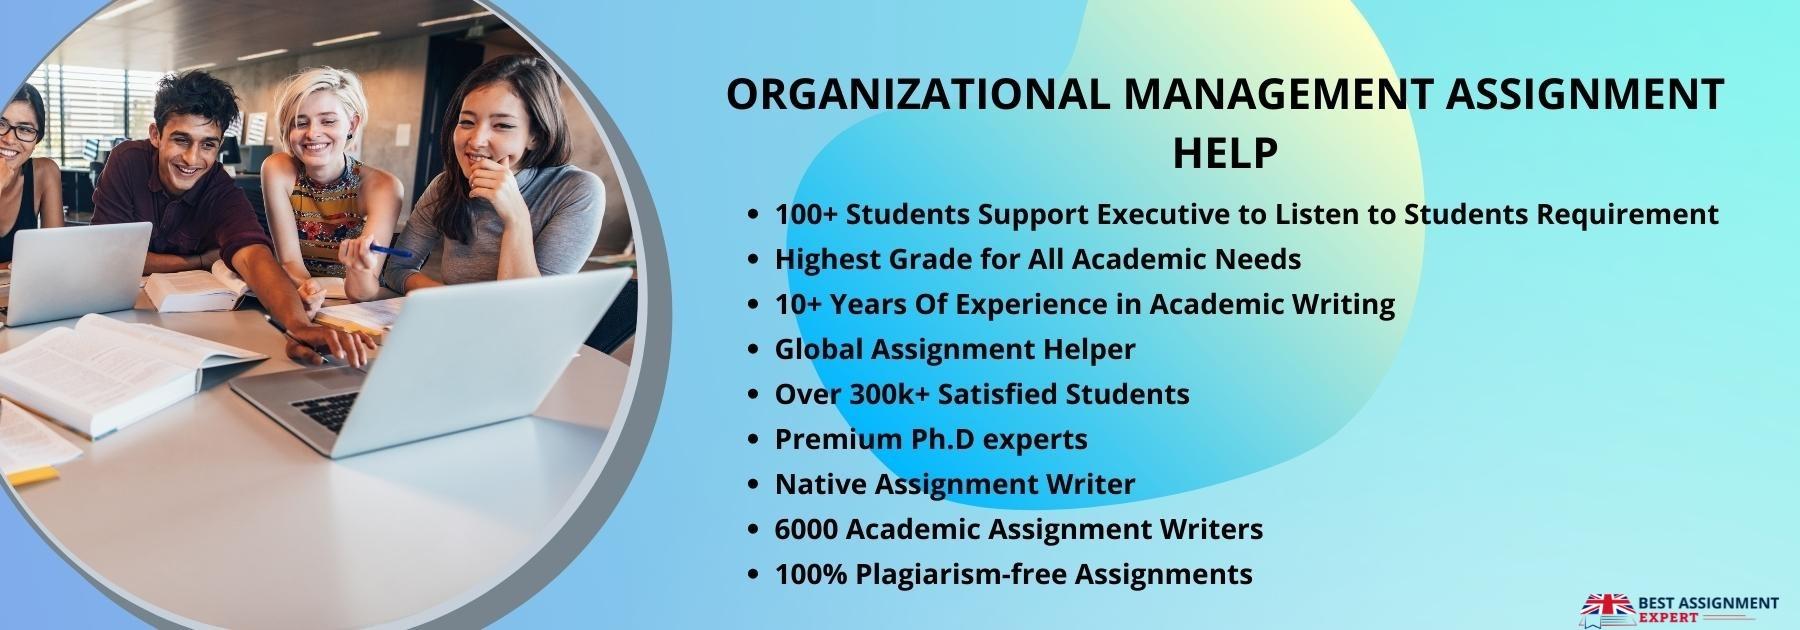 Organizational Management Assignment Help